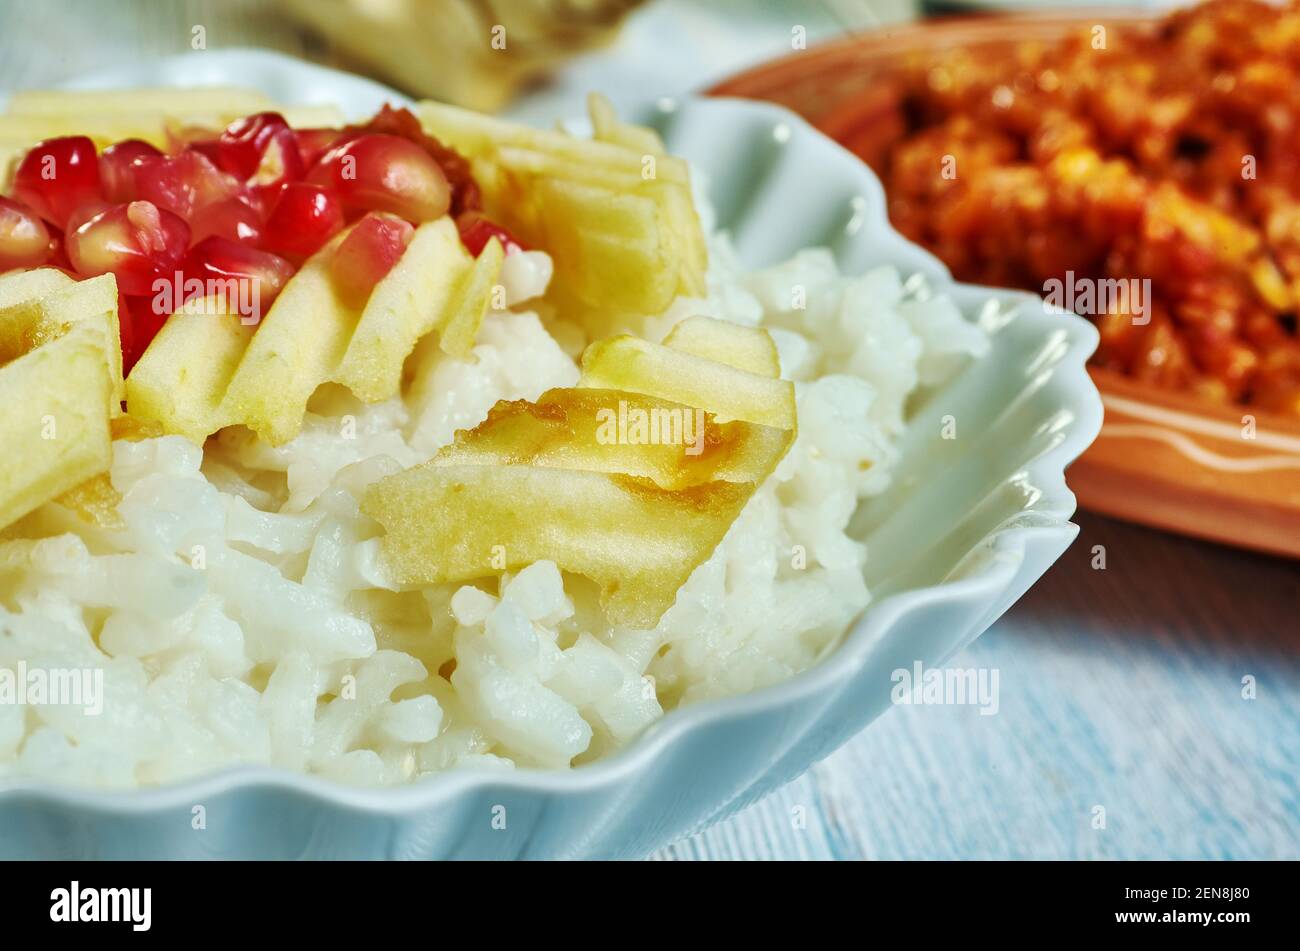 Risotto Alle mele - risotto aux pommes, plat populaire de riz italien Banque D'Images